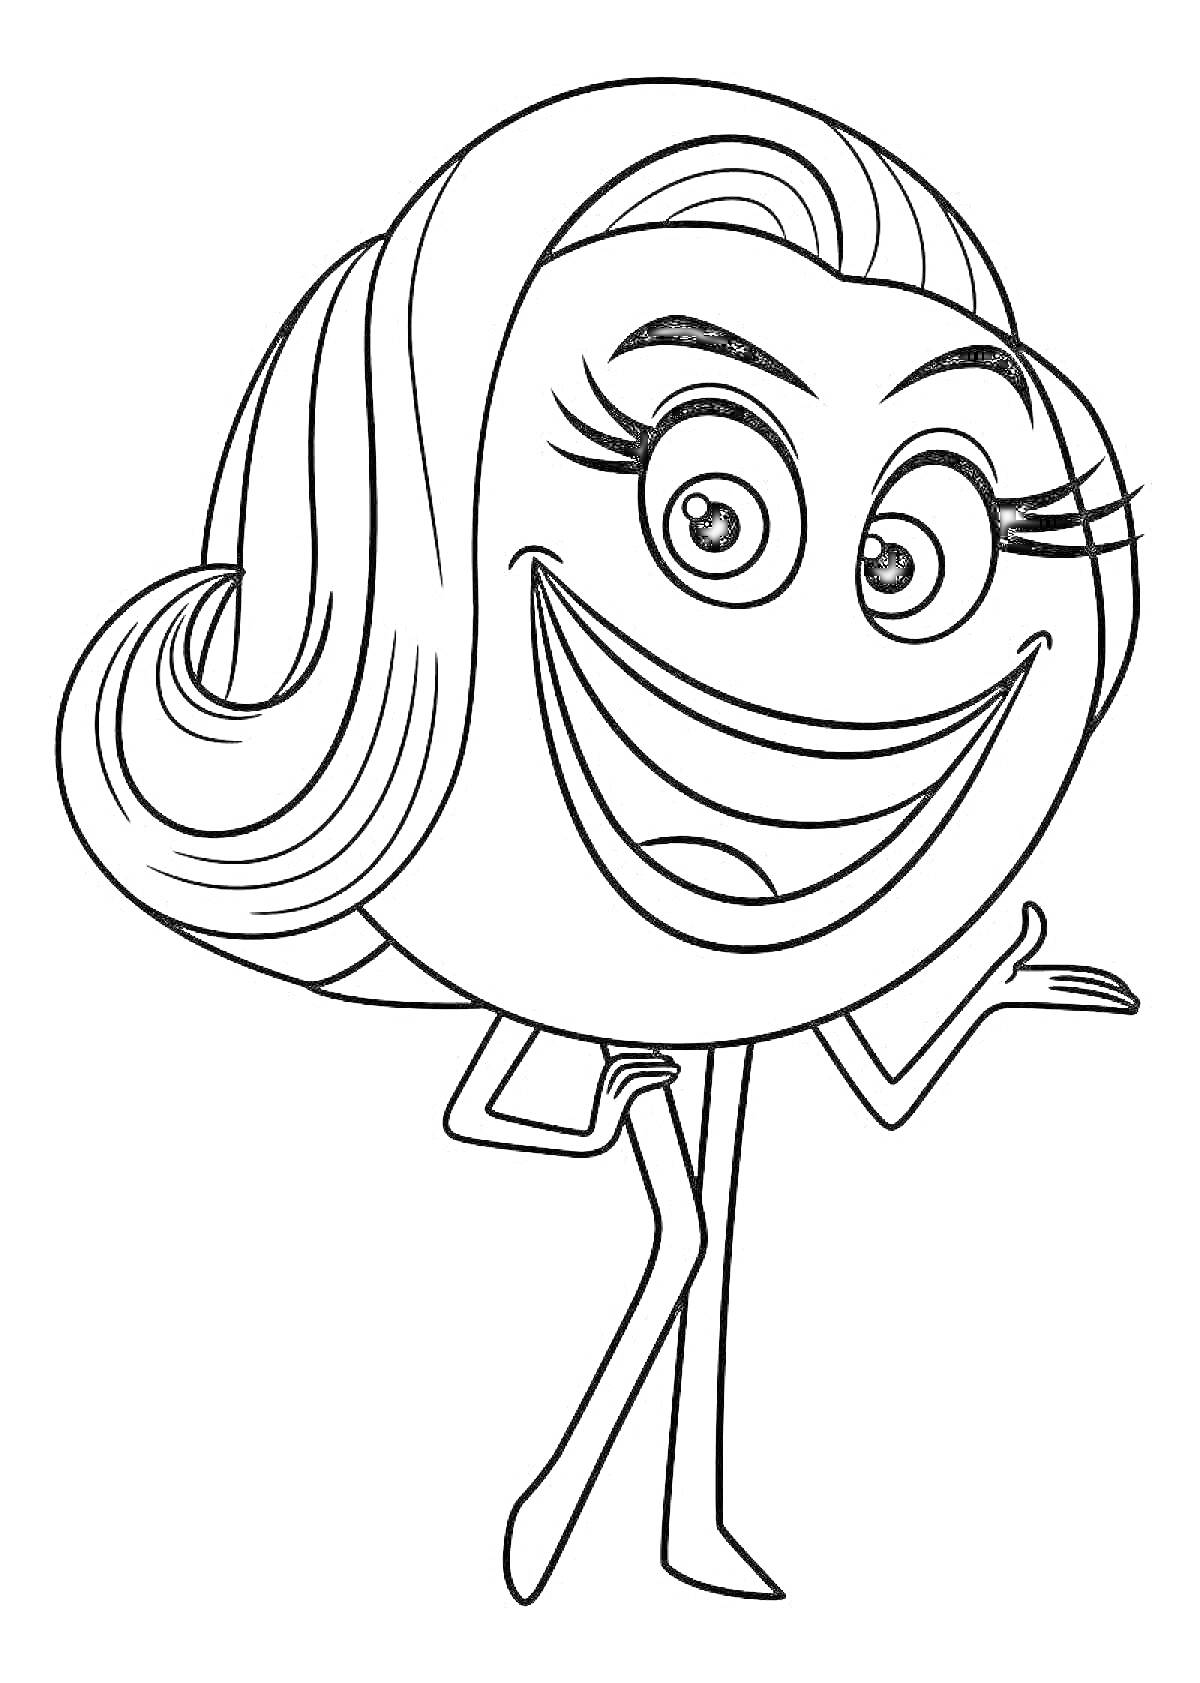 Раскраска Эмоджи с улыбающимся лицом с длинными ресницами и волнистыми волосами, в приподнятой позе с одной рукой на бедре, другая рука разведена в сторону